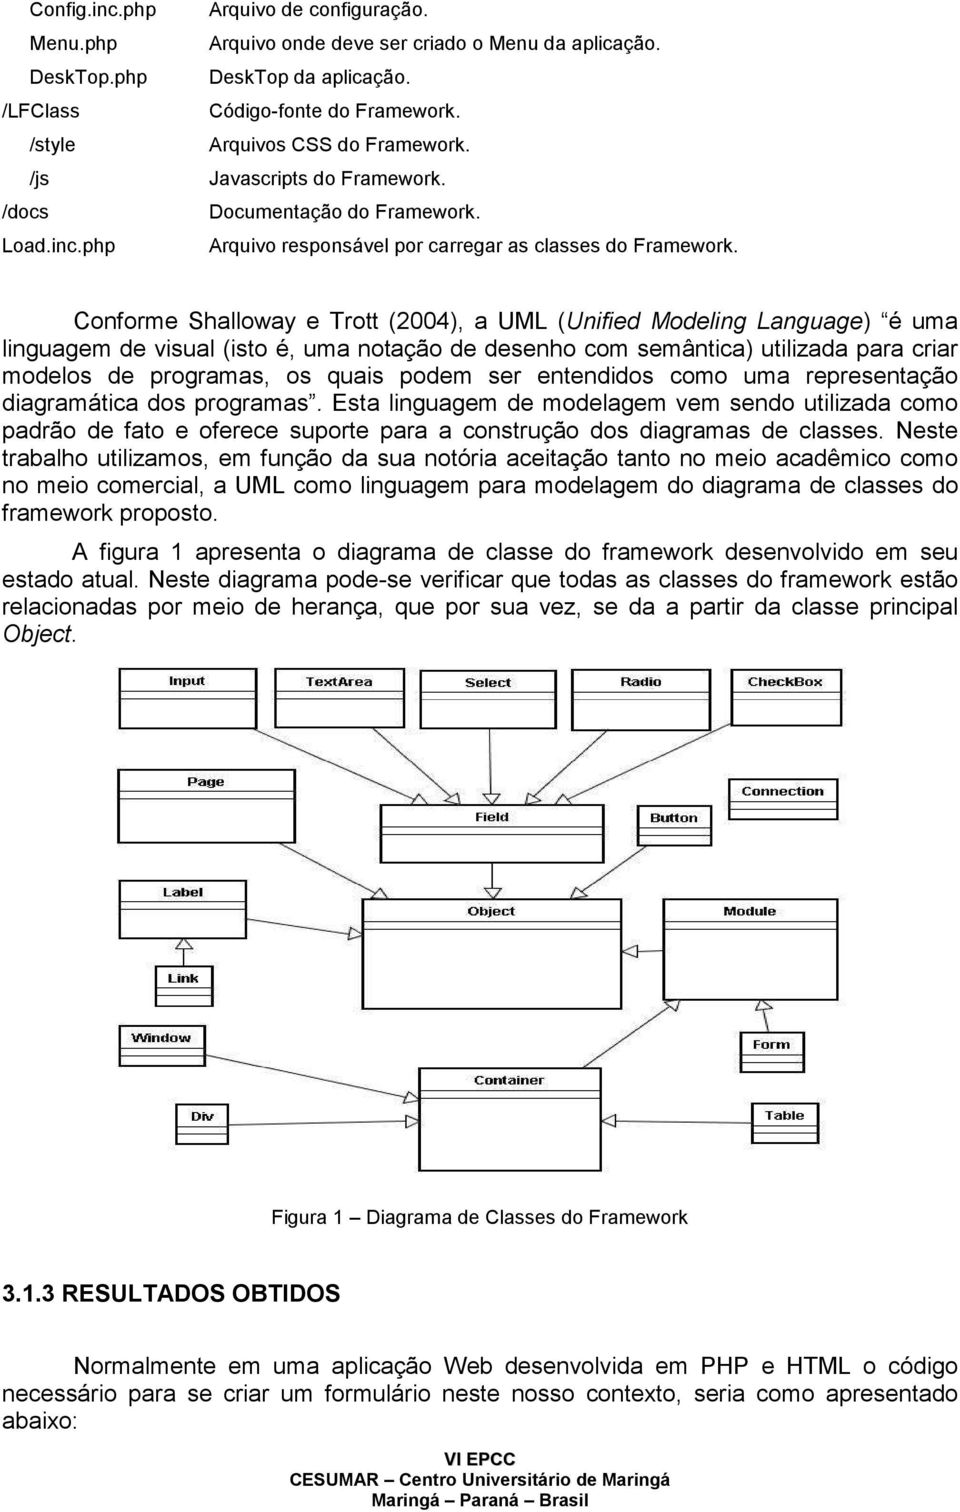 Conforme Shalloway e Trott (2004), a UML (Unified Modeling Language) é uma linguagem de visual (isto é, uma notação de desenho com semântica) utilizada para criar modelos de programas, os quais podem